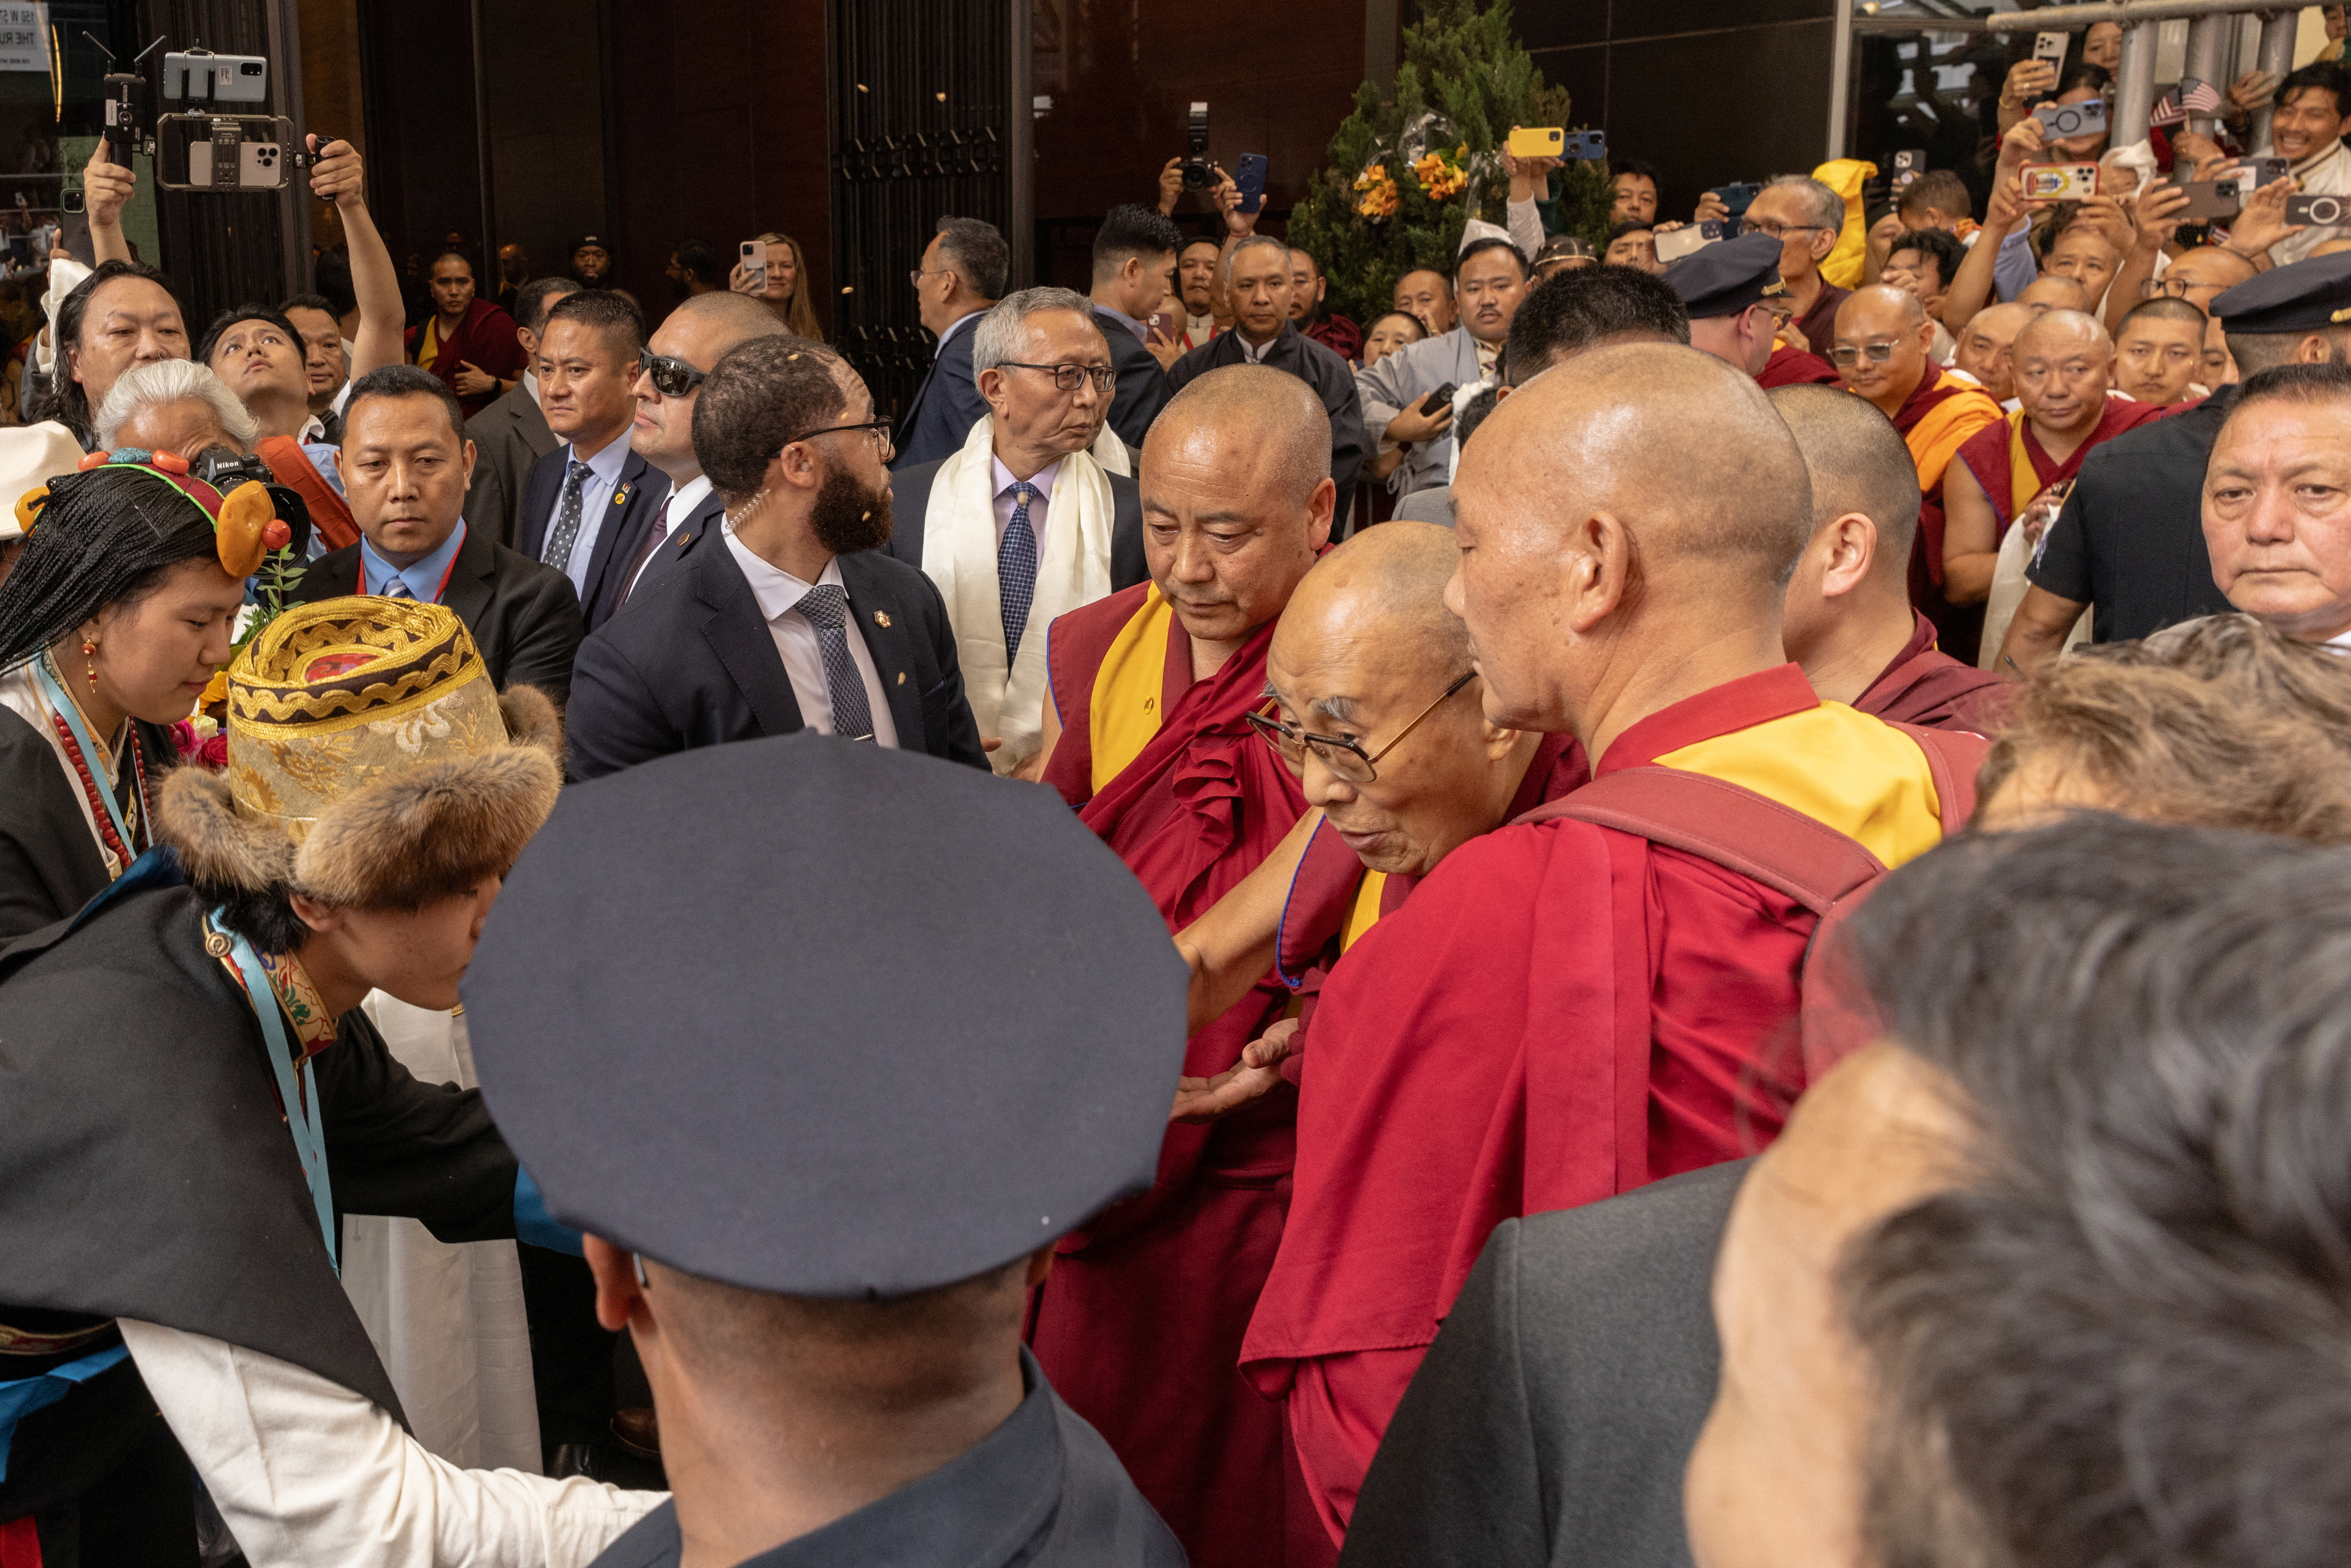 Tibetan spiritual leader, the Dalai Lama, arrives in New York